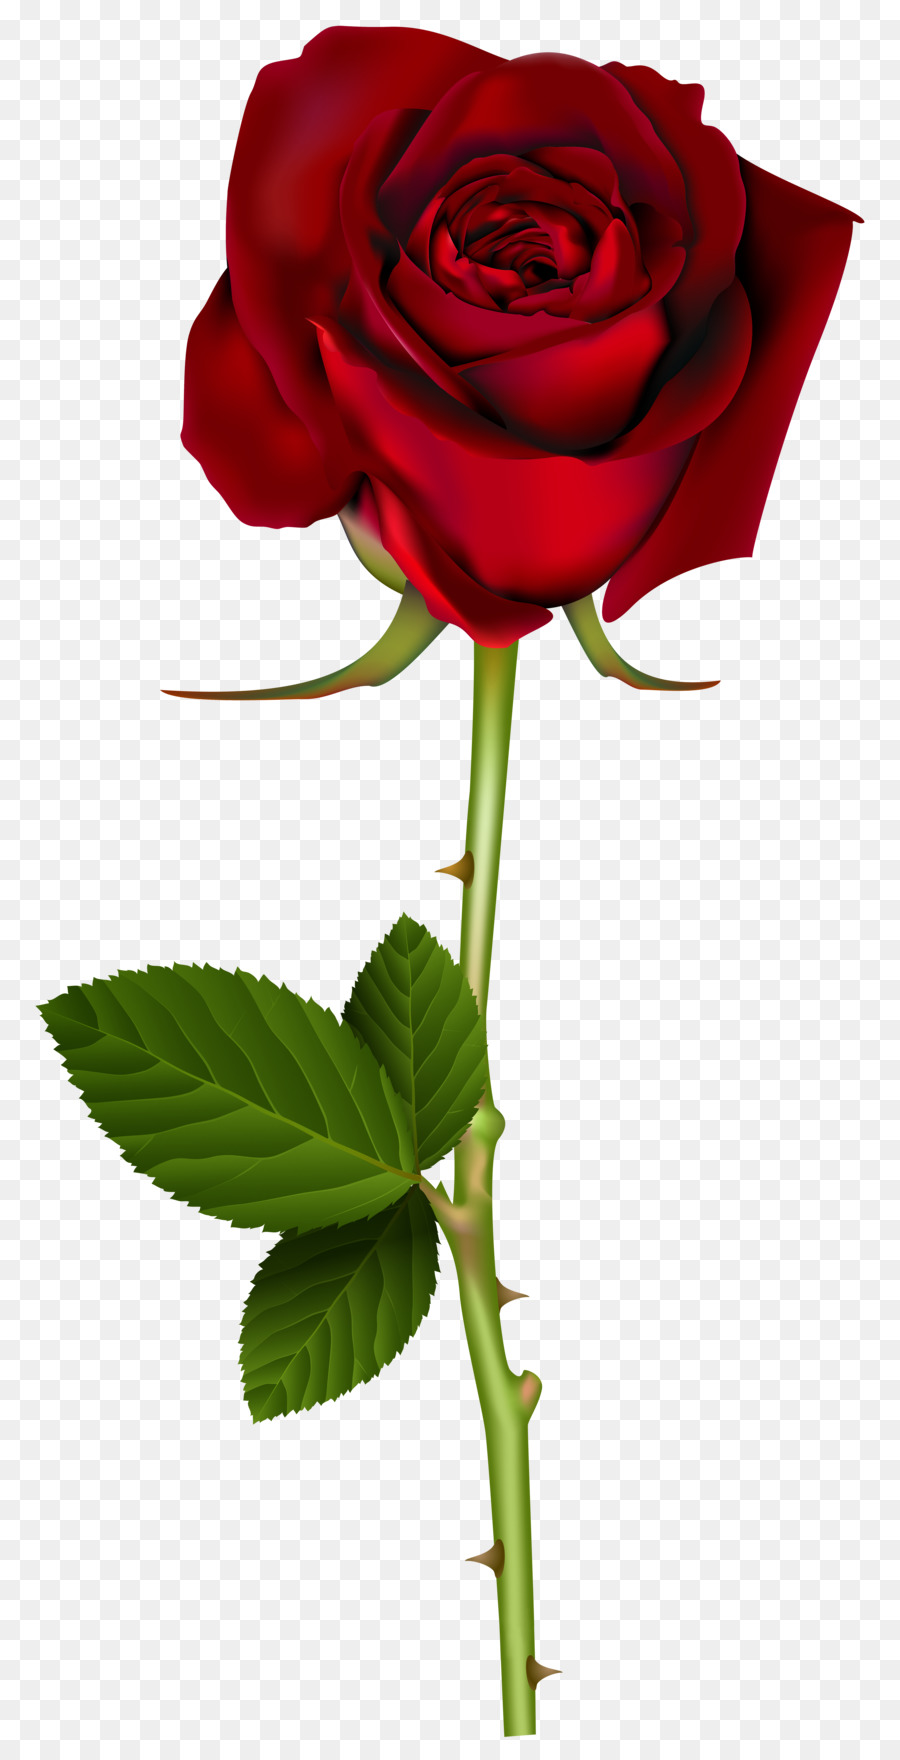 Blue rose Flower Clip art - rose png download - 4127*8000 - Free Transparent Rose png Download.